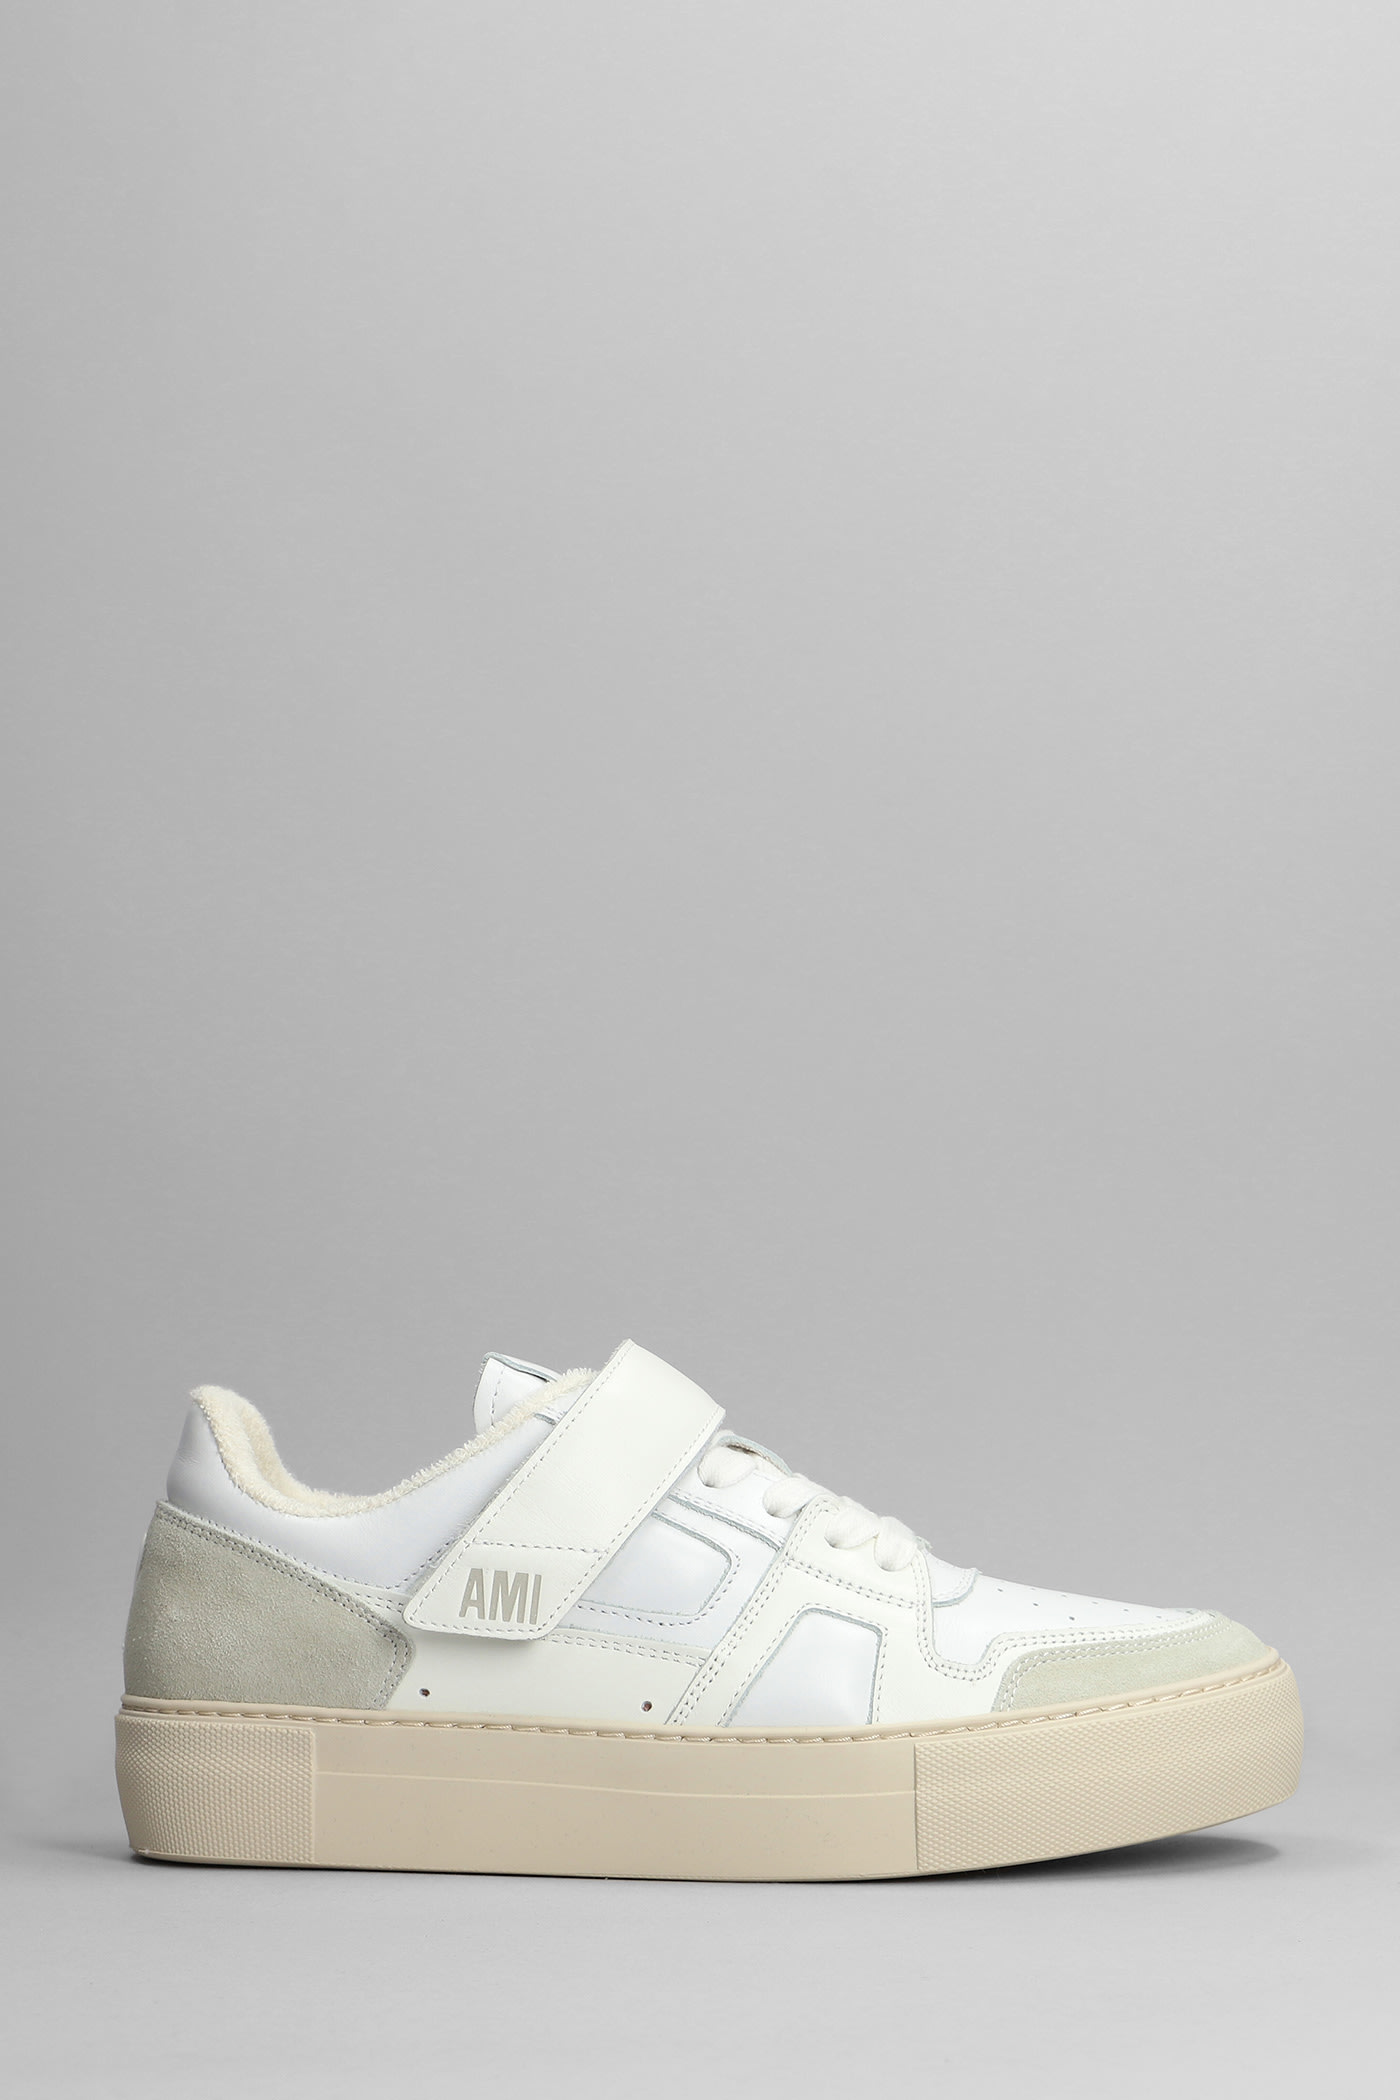 Ami Alexandre Mattiussi Sneakers In White Leather